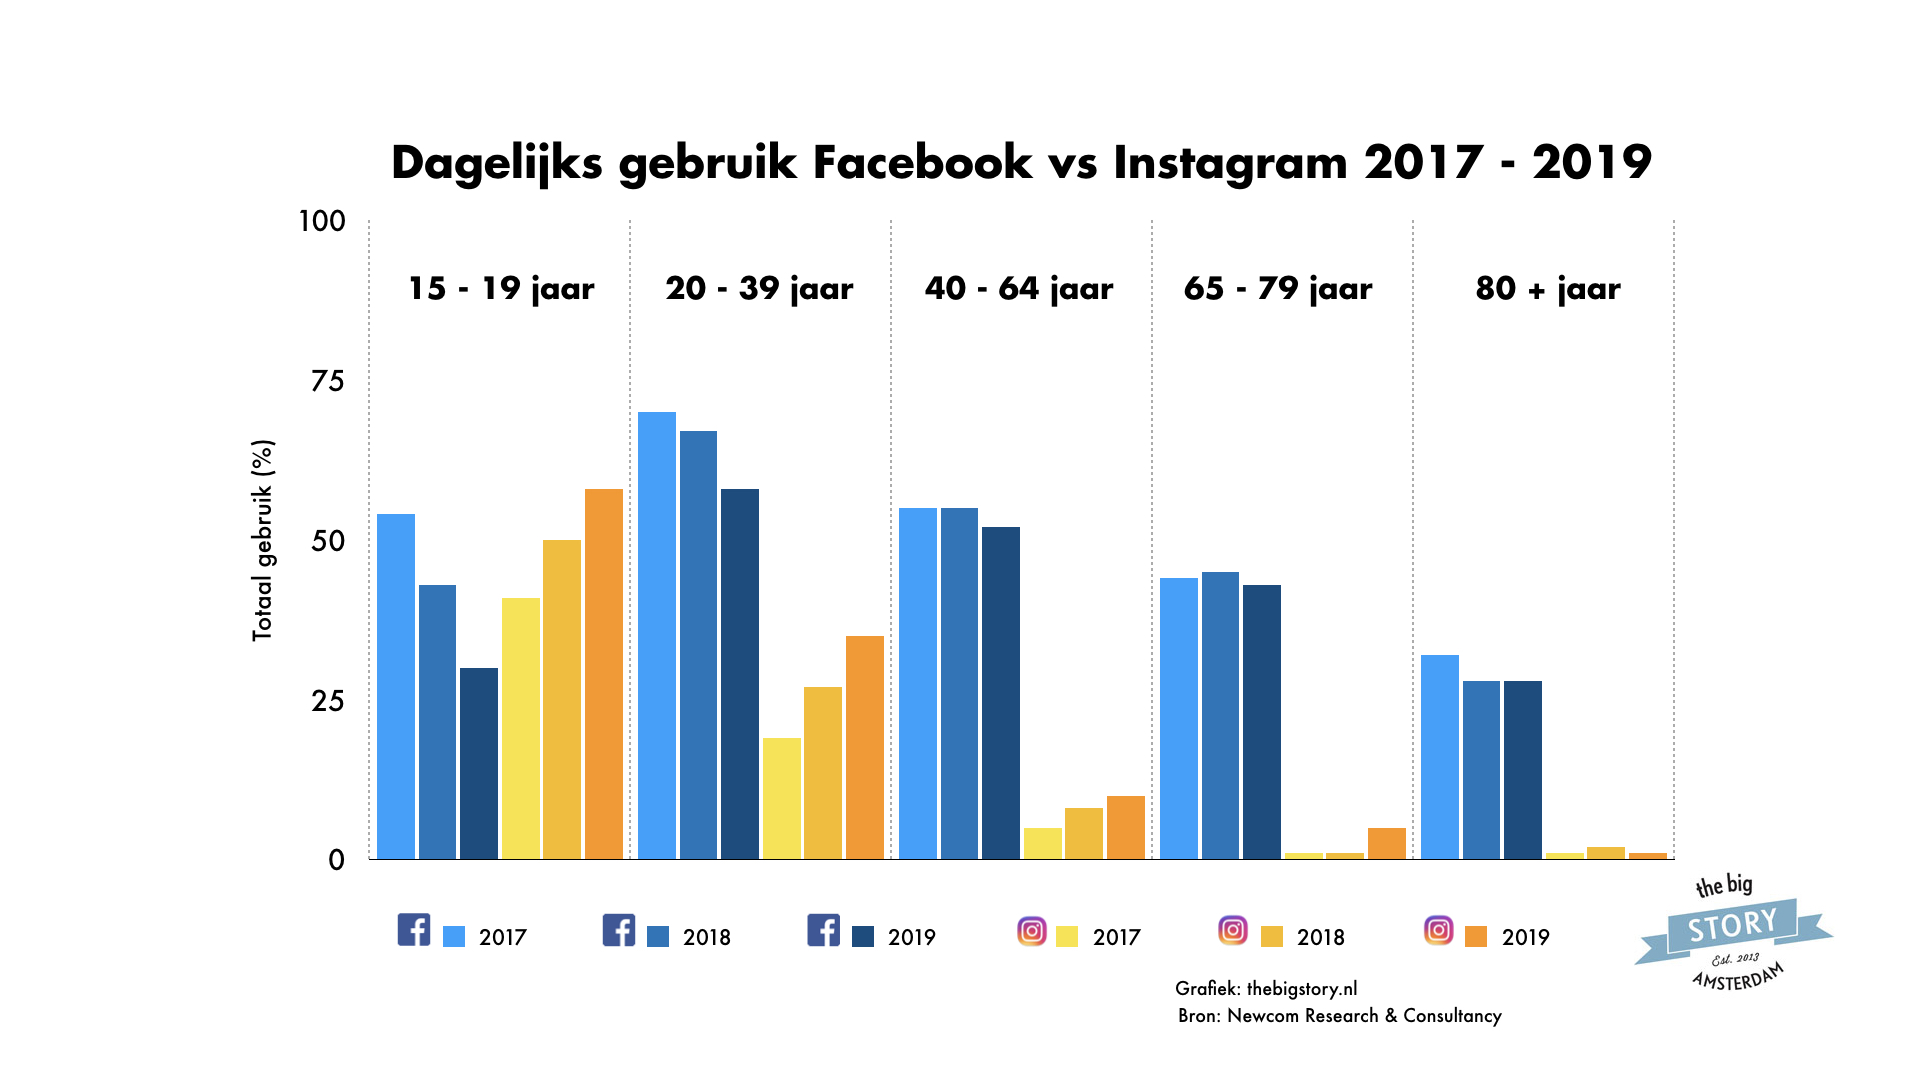 Dagelijks Facebook gebruik daalt en Instagram dagelijks gebruik groeit 2016 - 2019